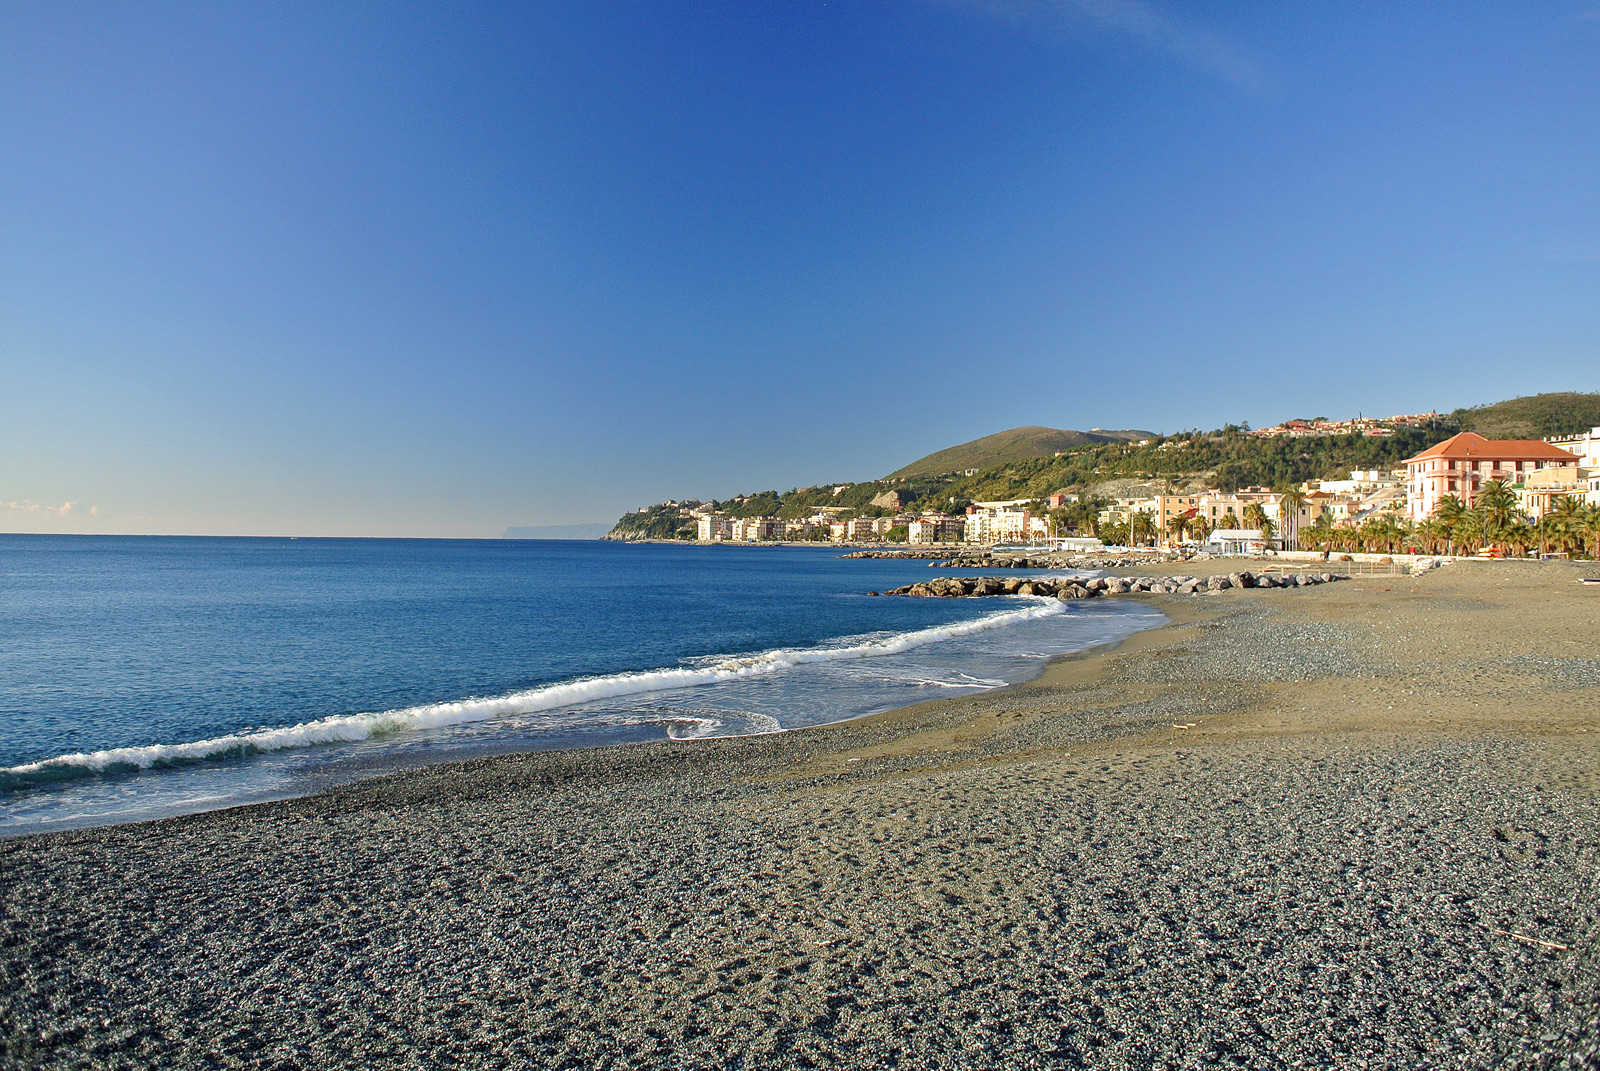 Spiaggia Cogoleto'in fotoğrafı siyah kum ve çakıl yüzey ile